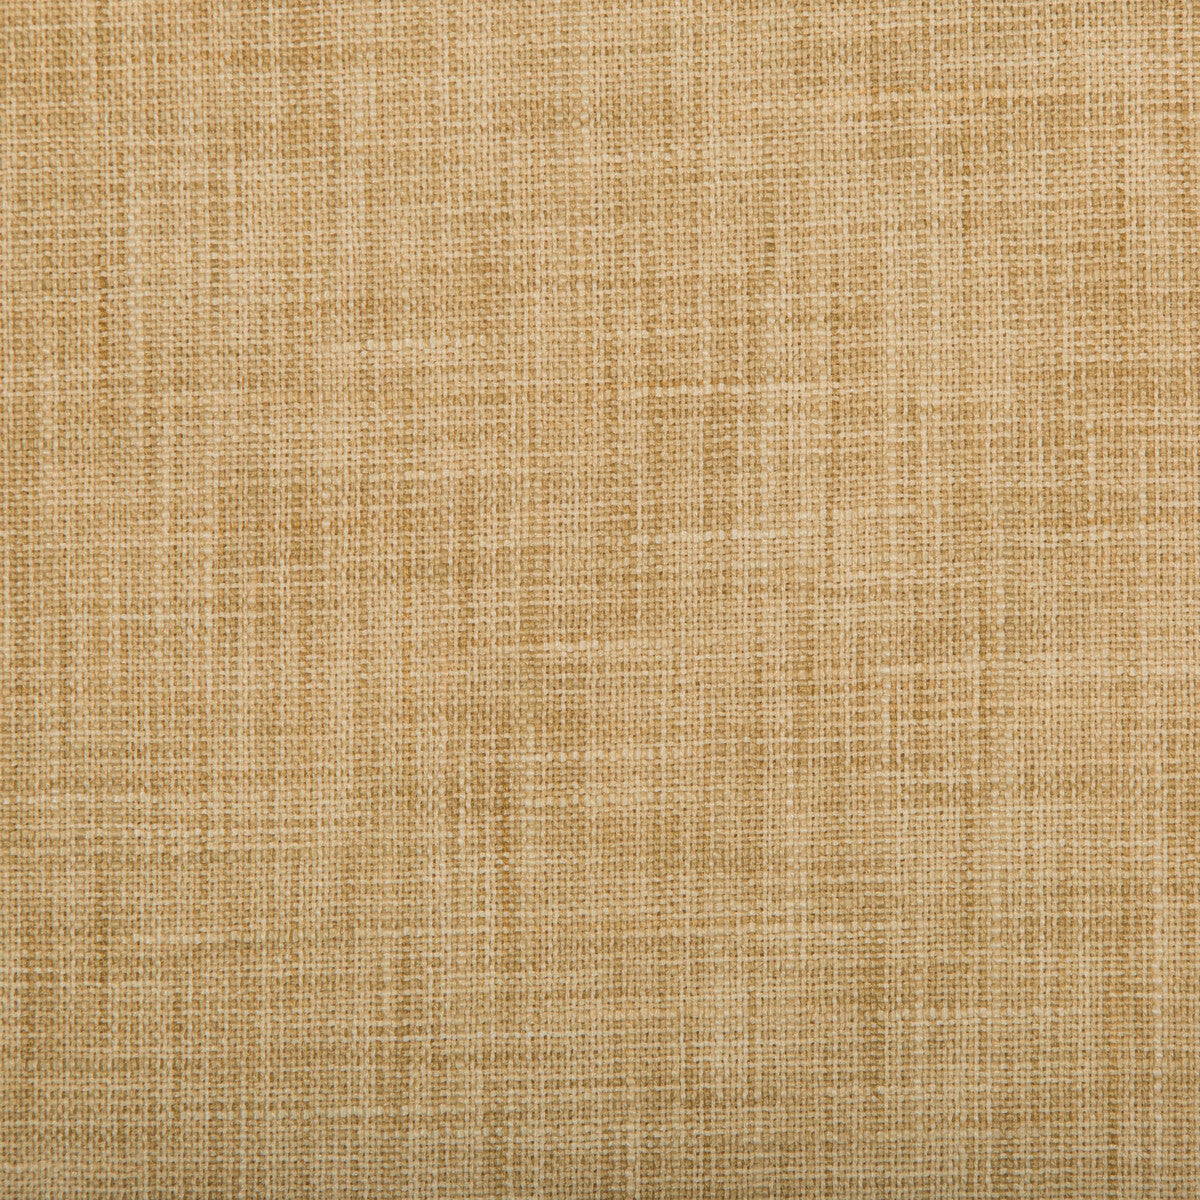 Kravet Basics fabric in 4668-4 color - pattern 4668.4.0 - by Kravet Basics